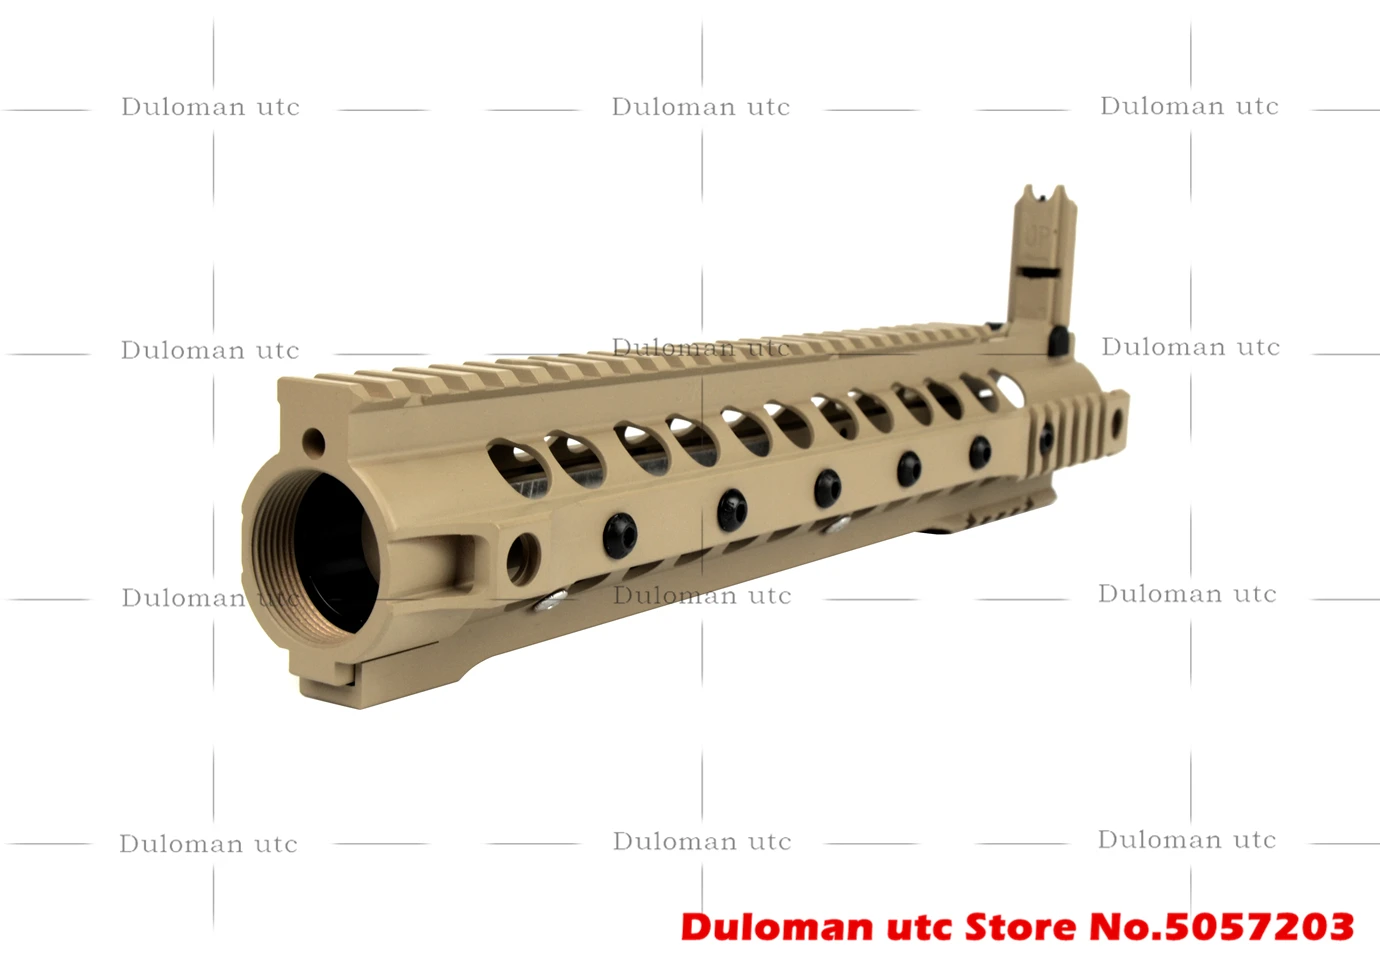 Duloman utc KAC SR-16 SR25 URX III& 3 Тактический поручень 12,5 дюймов с откидным фронтальным прицелом для страйкбола винтовок AEG/GBB